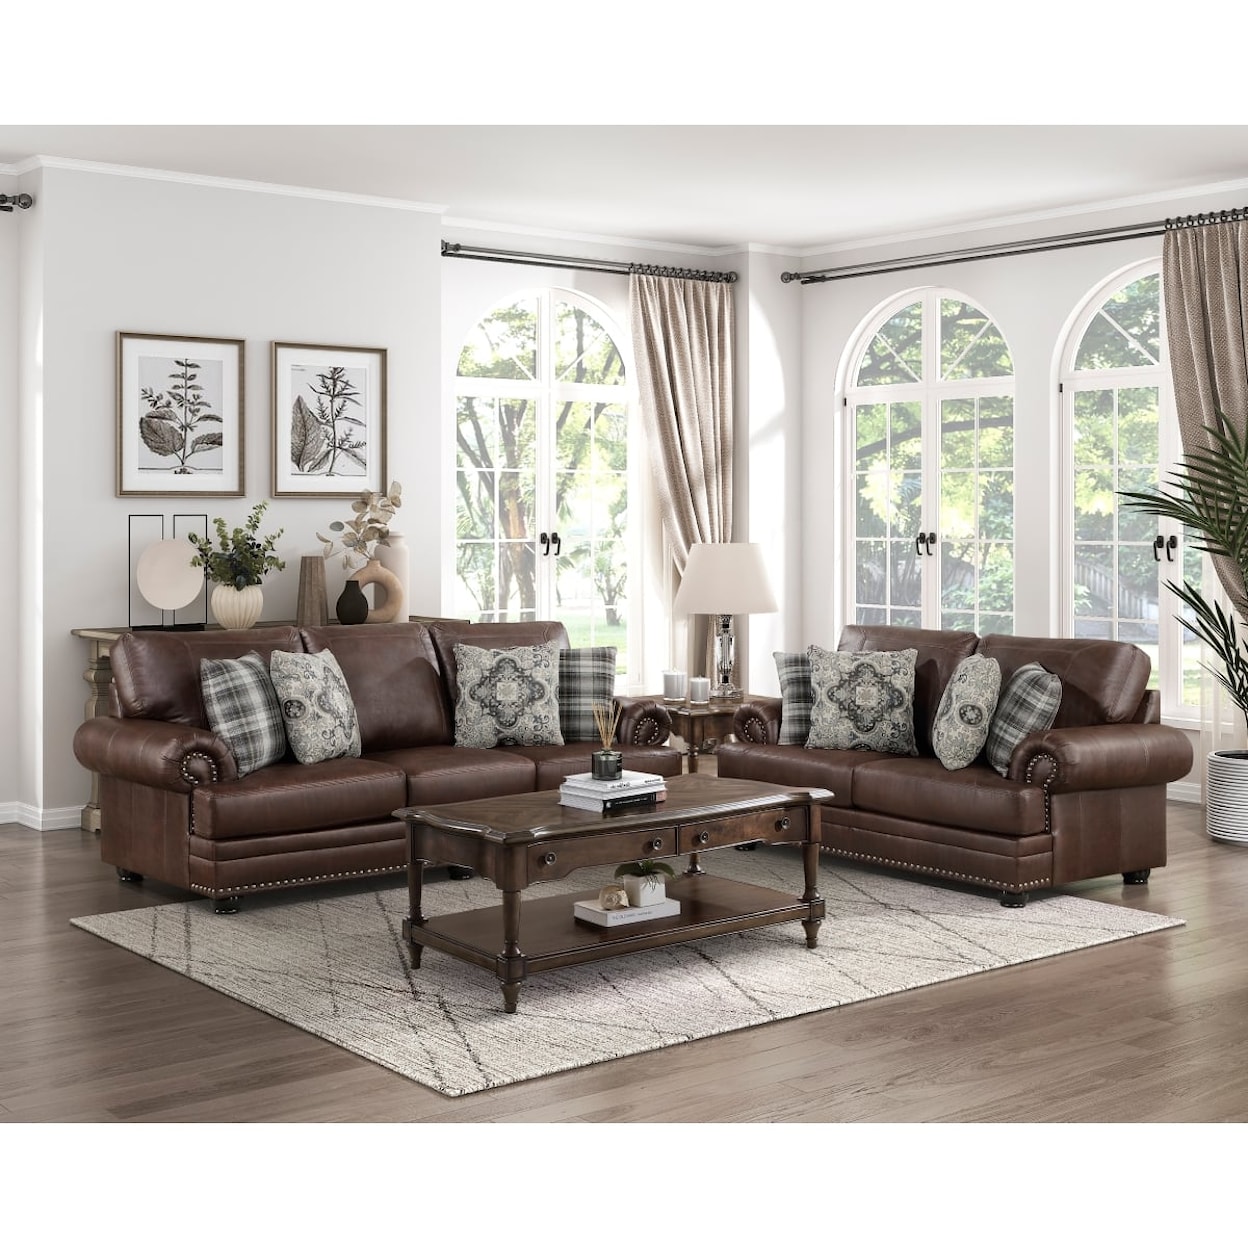 Homelegance Furniture Franklin Sofa